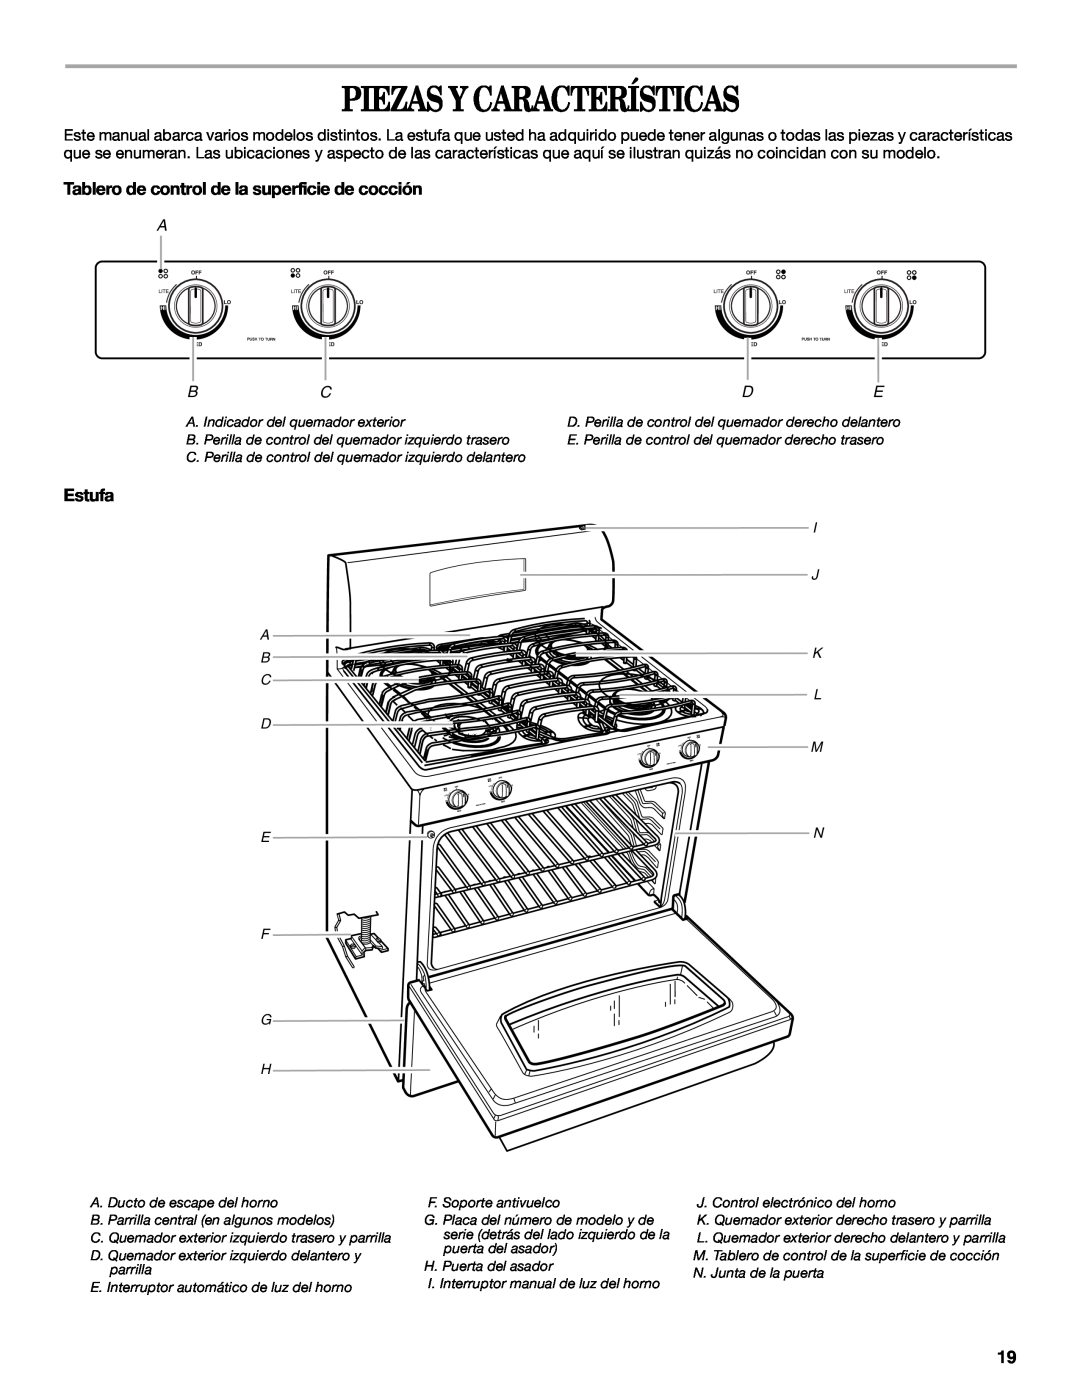 Whirlpool SF315PEPB0 manual Piezas Y Características, Tablero de control de la superficie de cocción, Estufa, F G H 